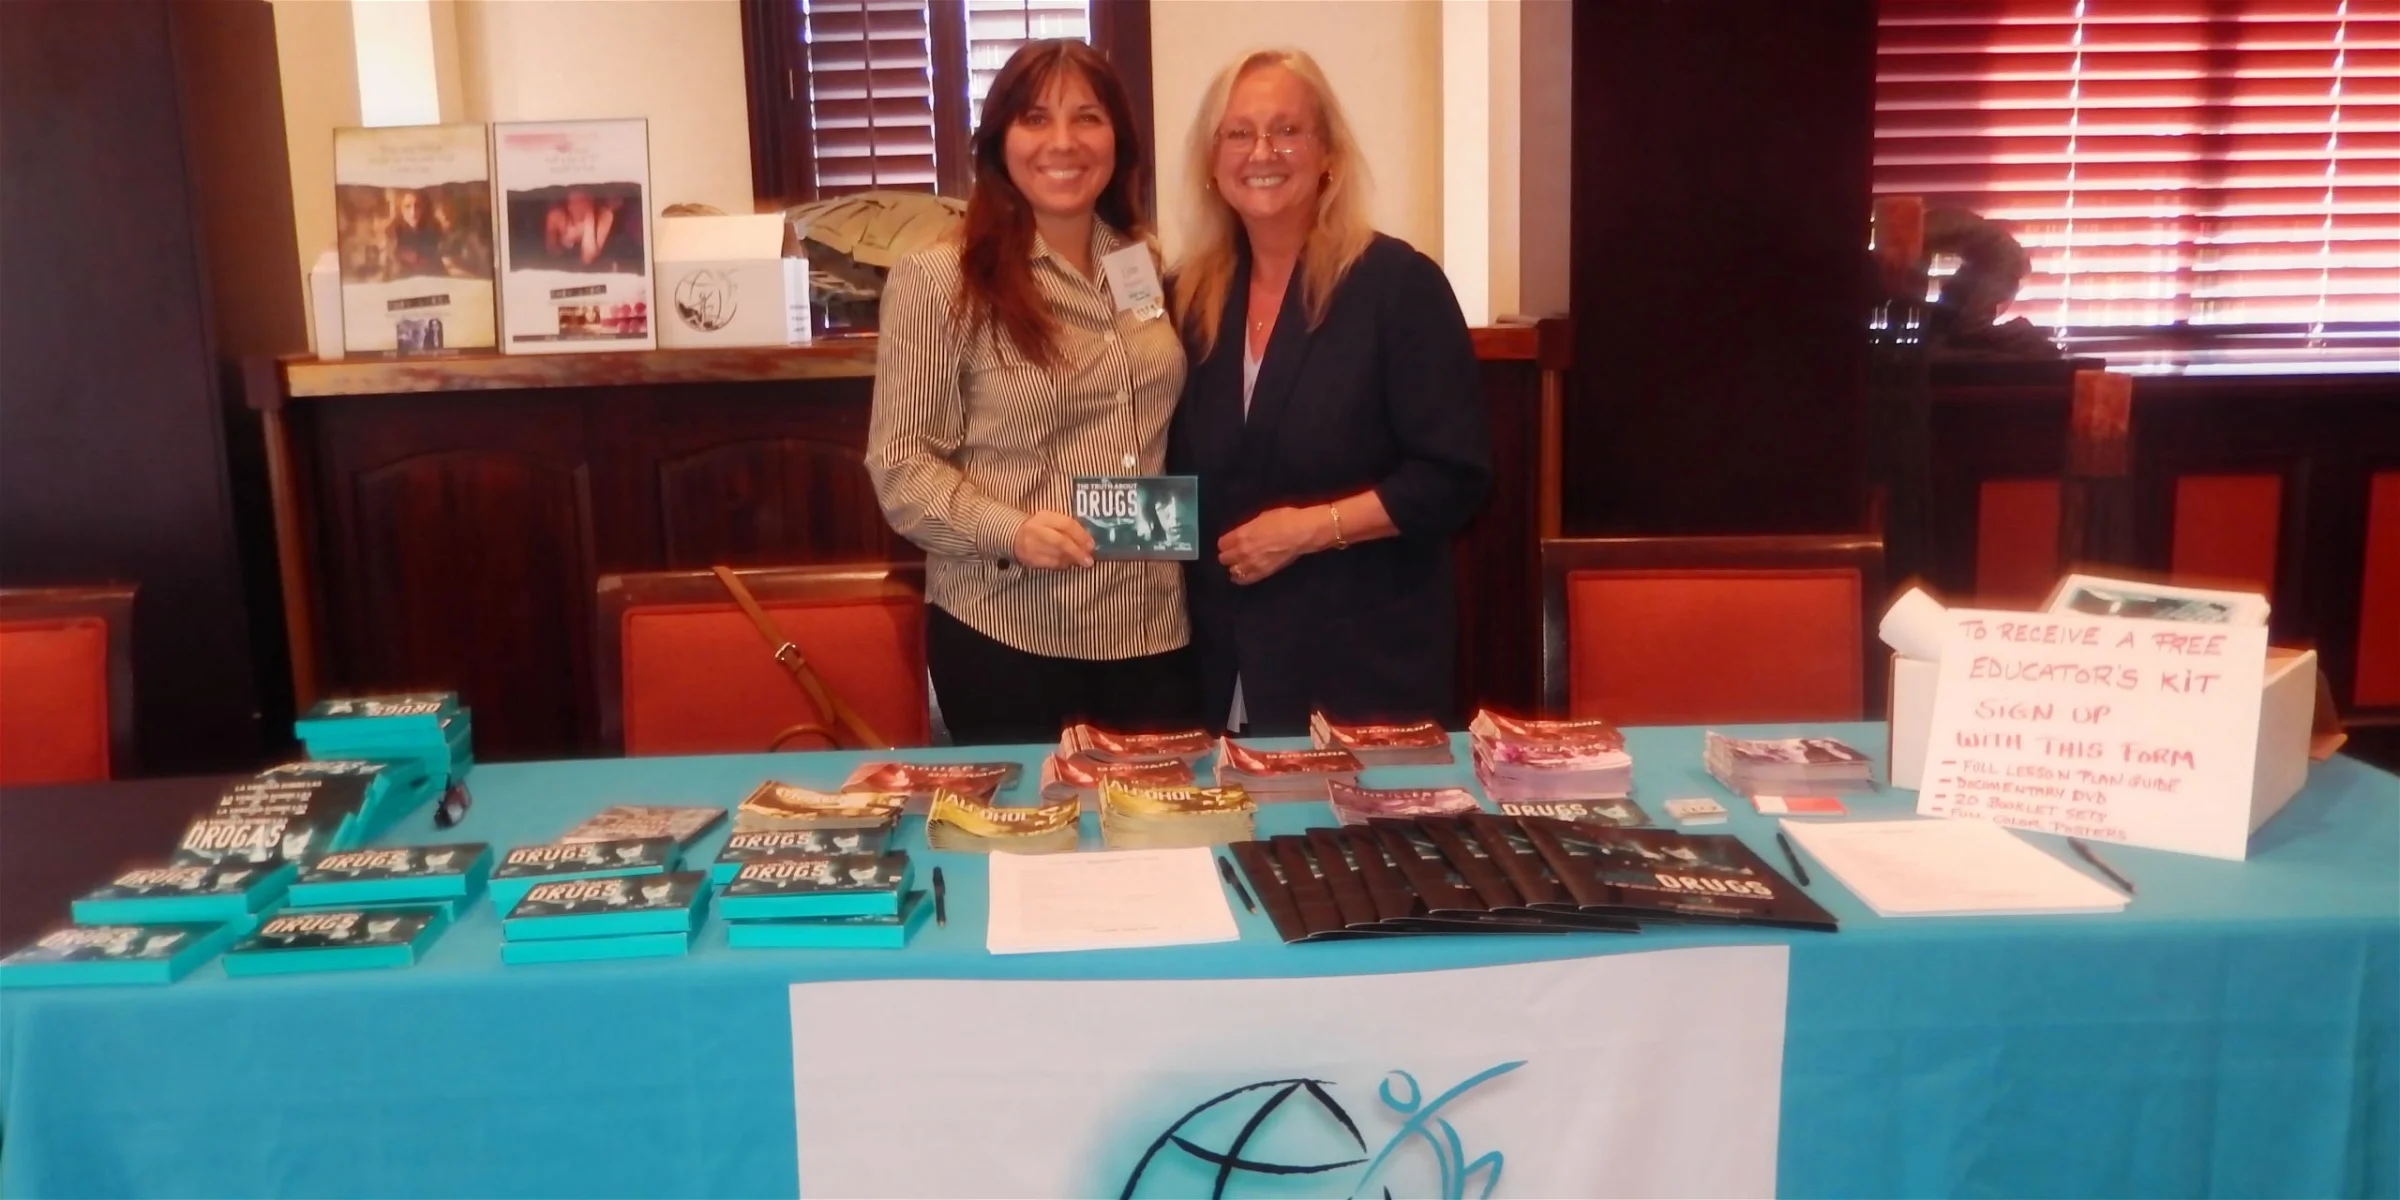 Lynn Posyton & Kathy Wach at Tampa Drug Summit